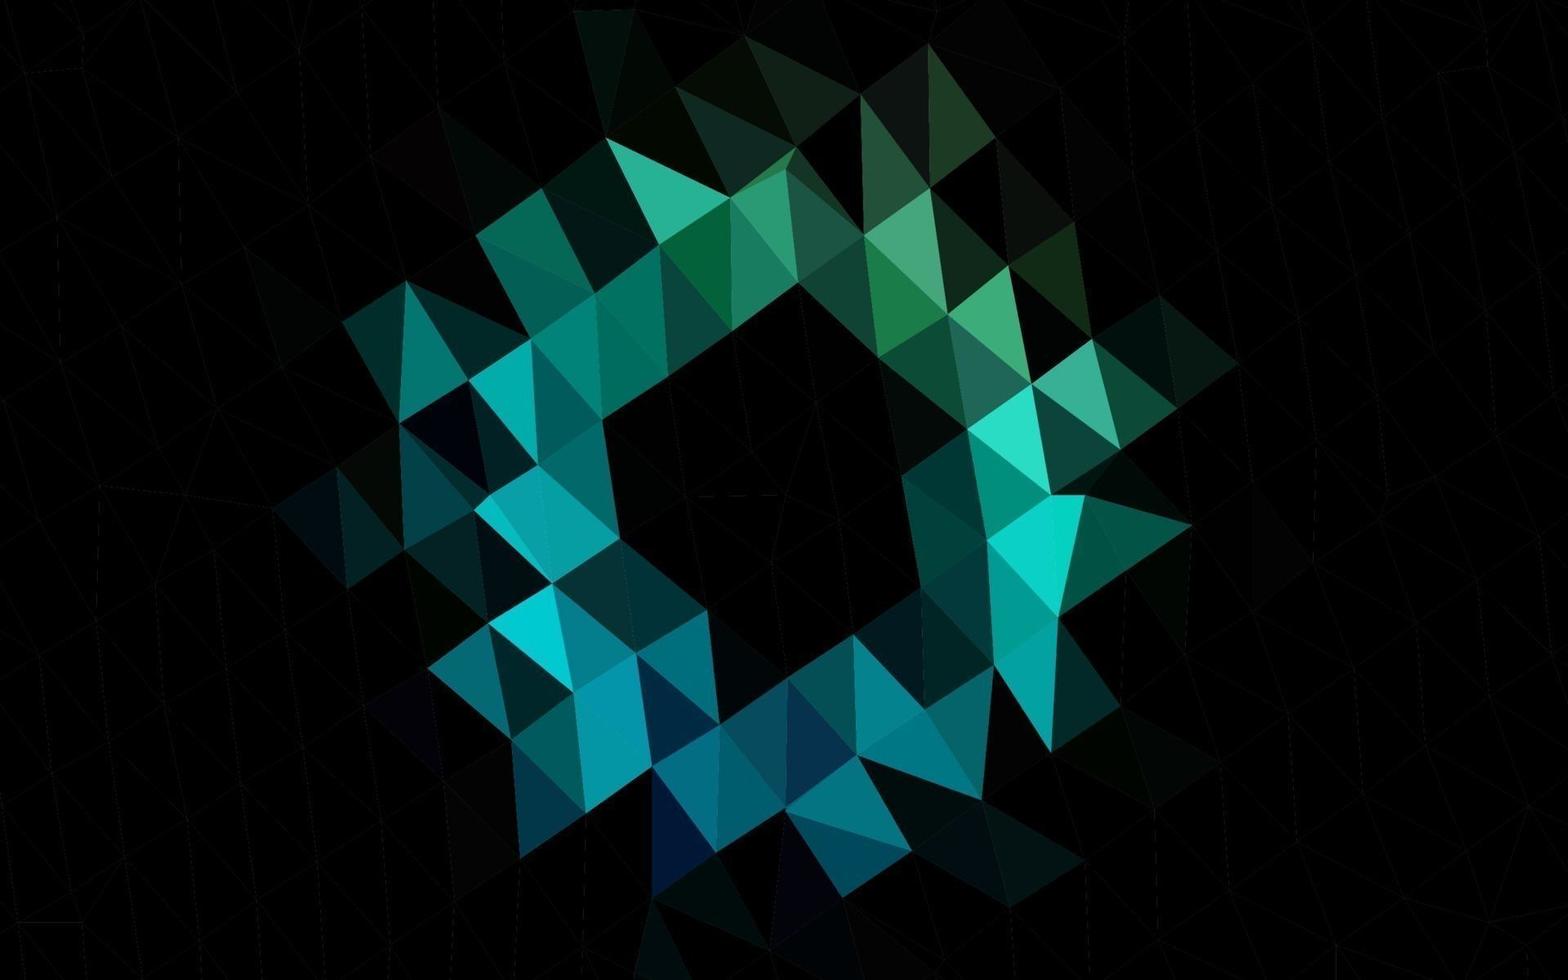 hellblauer, grüner abstrakter polygonaler Vektorplan. vektor